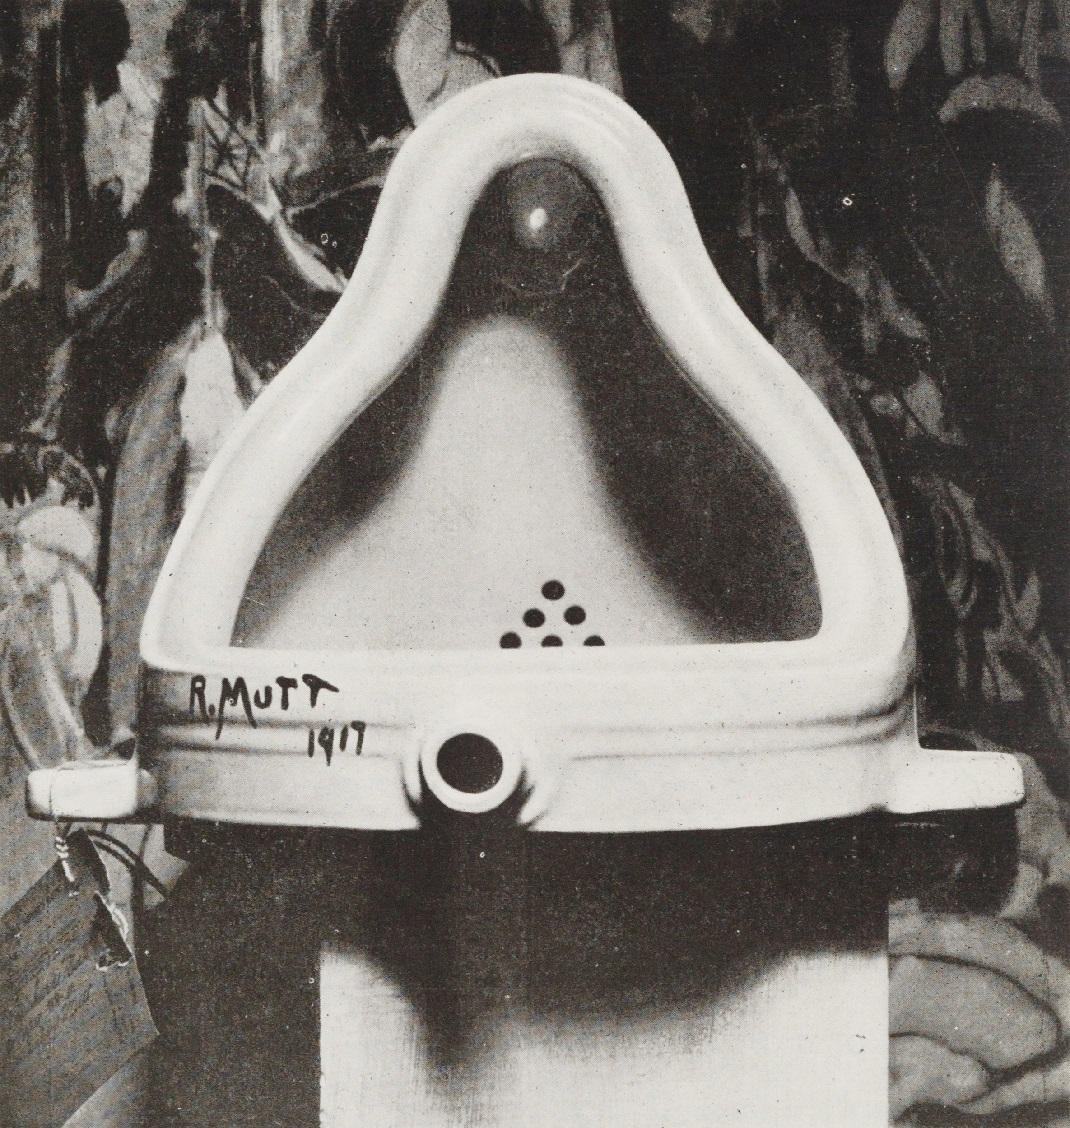 L'immagine è una foto in bianco e nero della celebre opera "Fontaine" di Marcel Duchamp, un orinatoio staccato e capovolto con una scritta nera nella parte inferiore "R.MUTT 1917"